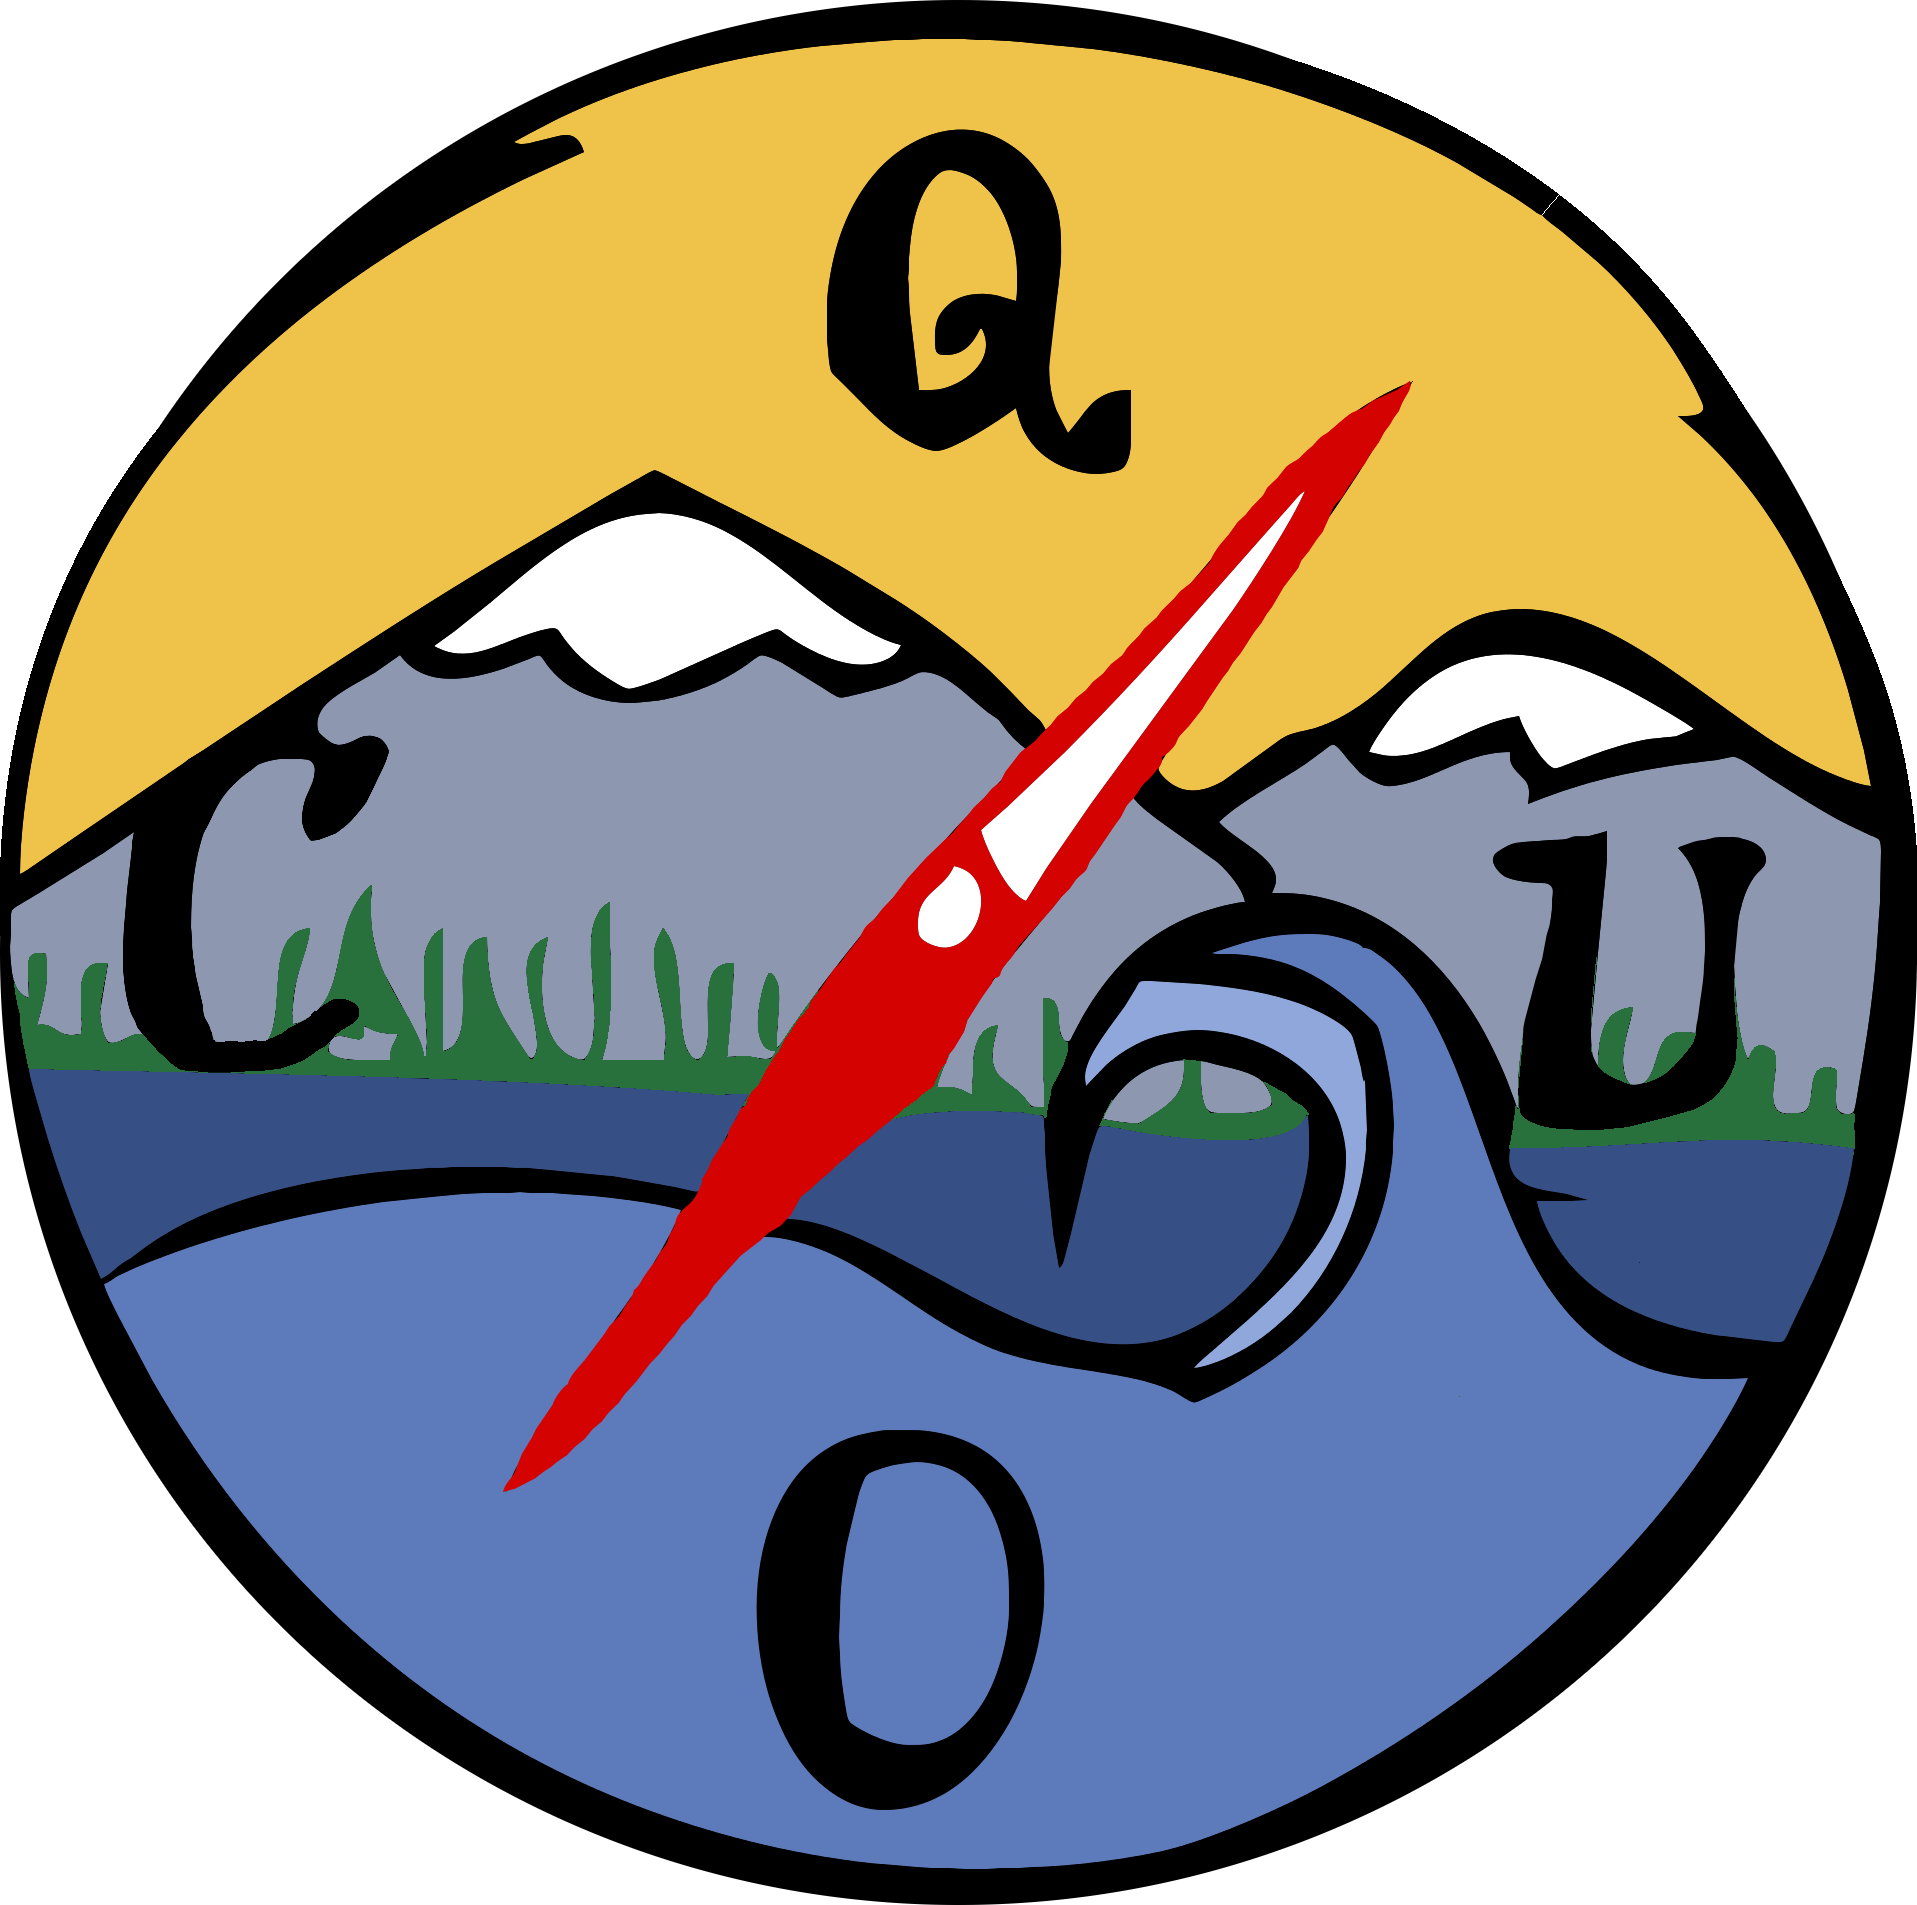 Kayaking clipart symbol. Quoc logo